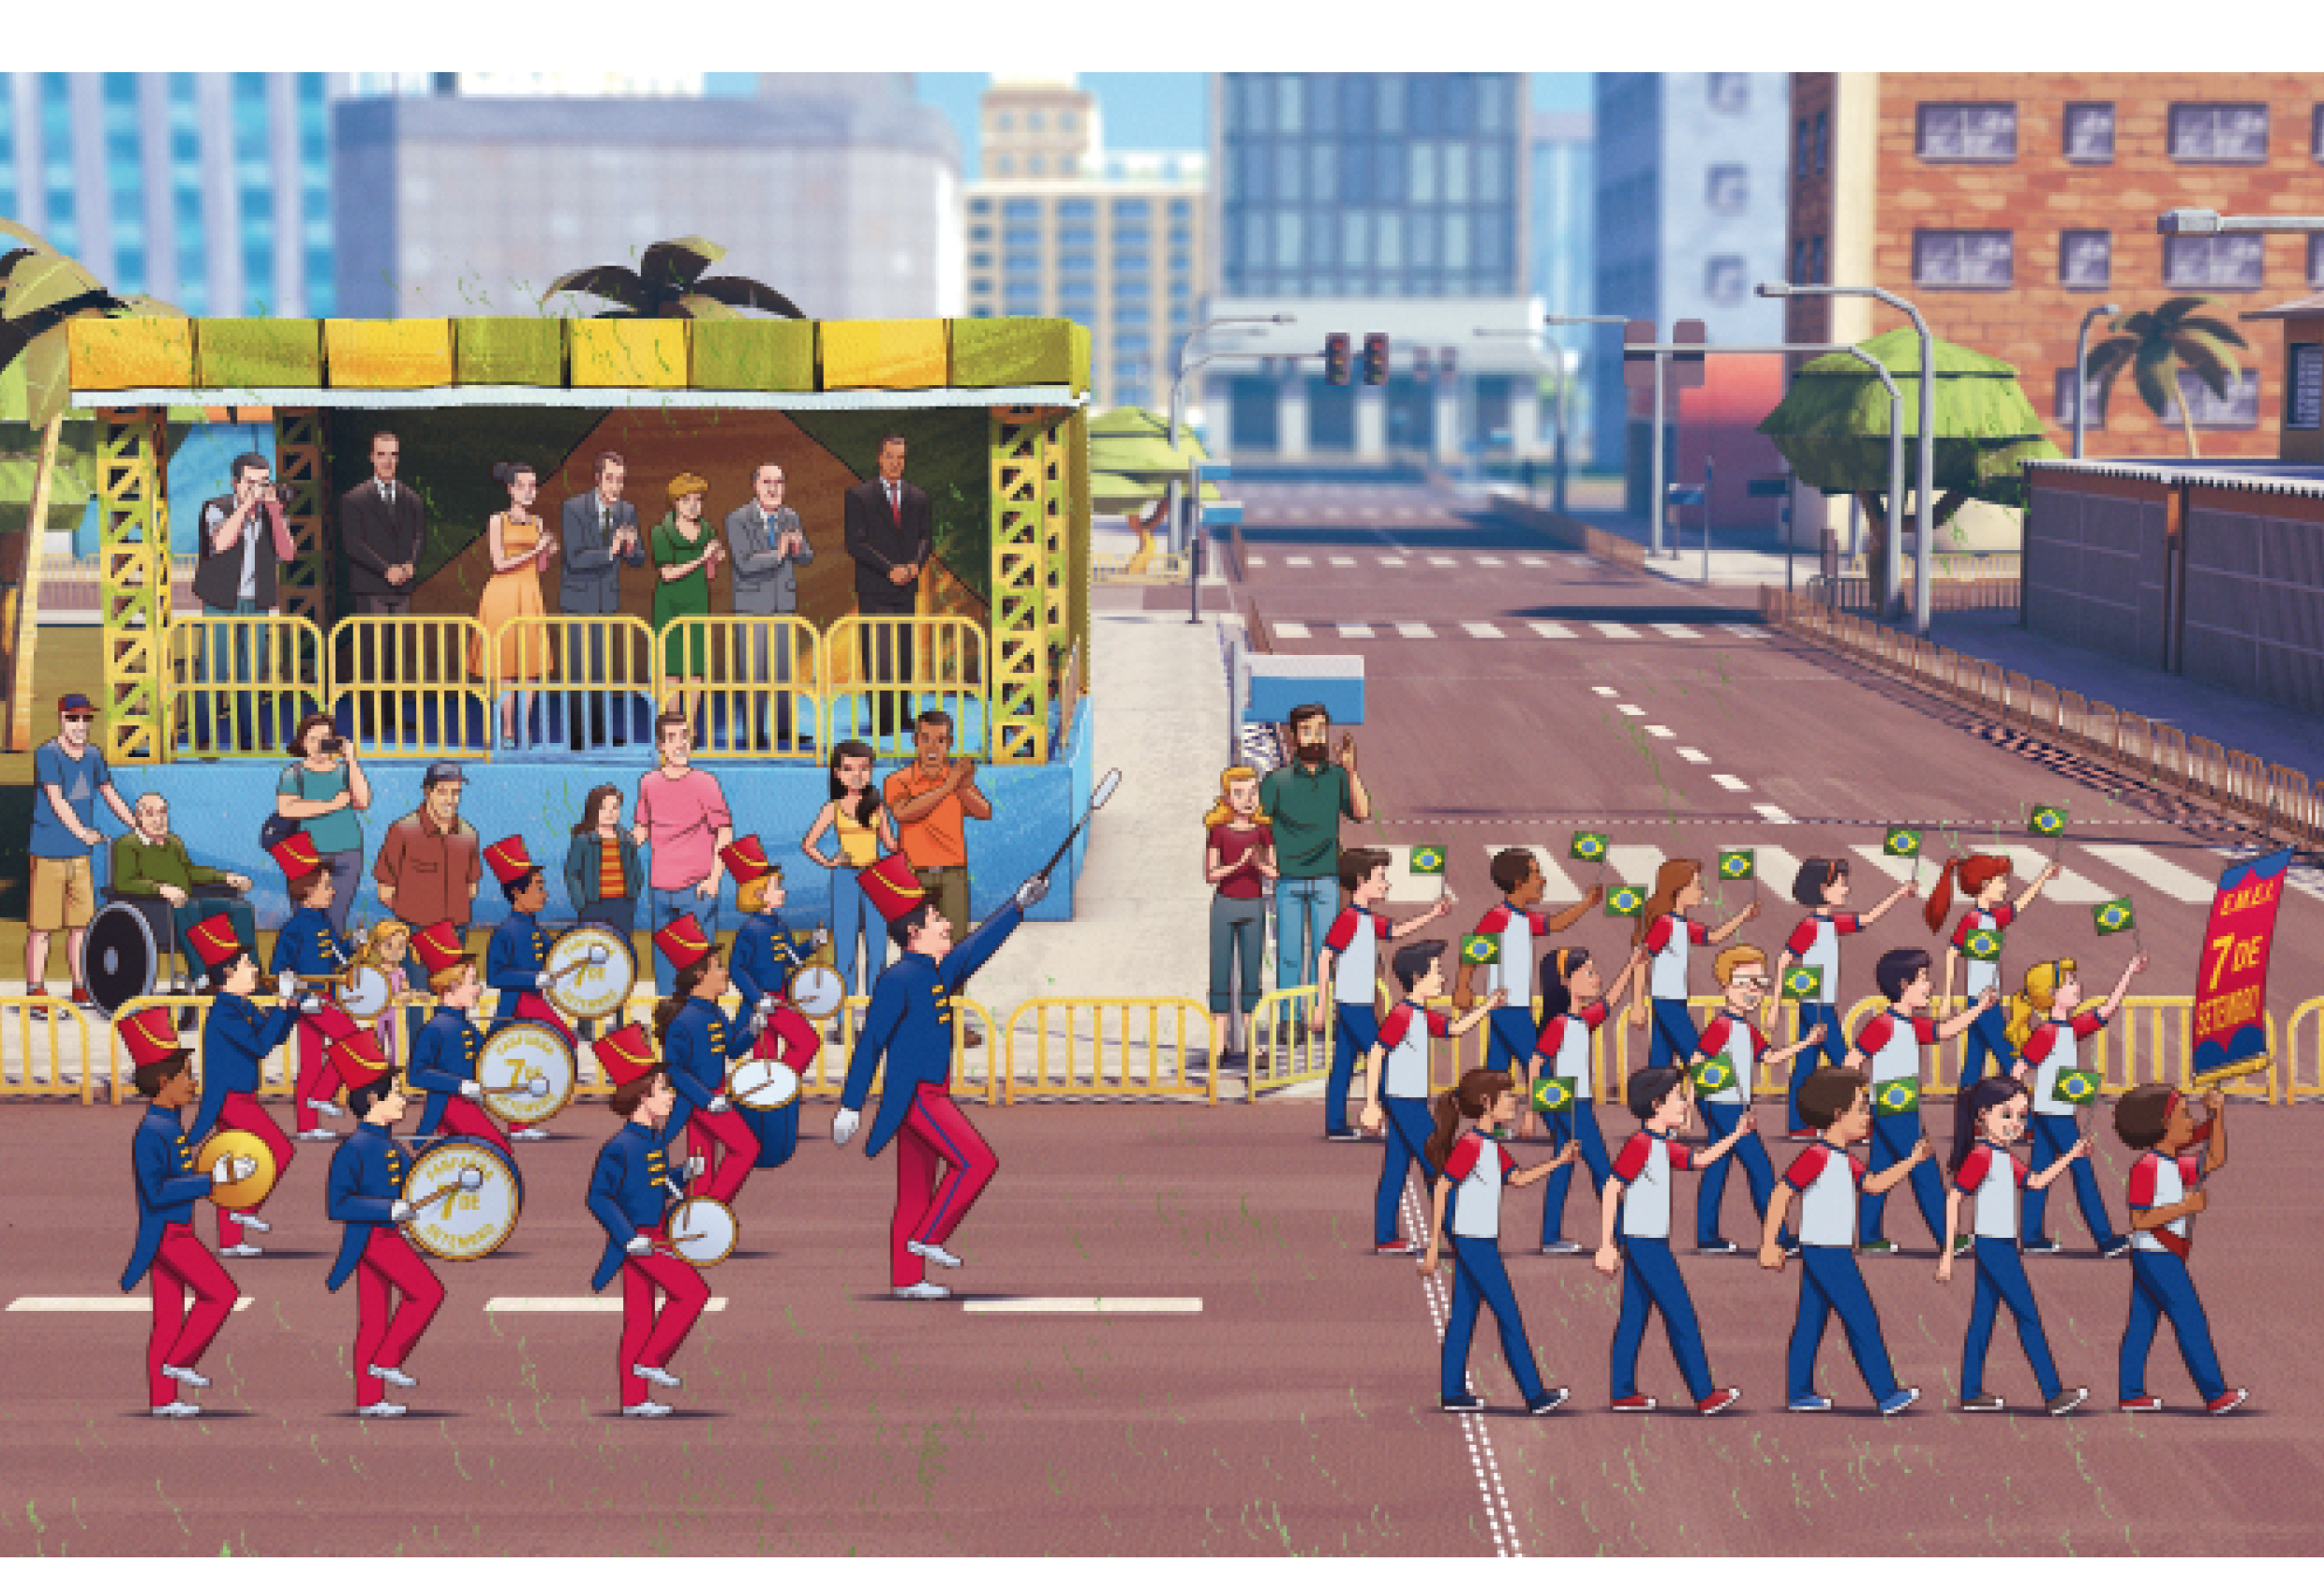 Imagem: Ilustração. À direita, alunos com uniforme estão divididos em três fileiras em uma rua e segurando bandeiras do Brasil. A menina que está na frente segura uma faixa com a informação: E.M.E.I. 7 DE SETEMBRO. À esquerda, alunos com chapéu, casaco azul, calça vermelha e sapatos brancos estão enfileirados e tocando instrumentos musicais. Atrás deles, pessoas observam na calçada e em seguida há homens com ternos e mulheres com vestidos em um palanque. Ao fundo, postes, árvores, casas e prédios. Fim da imagem.